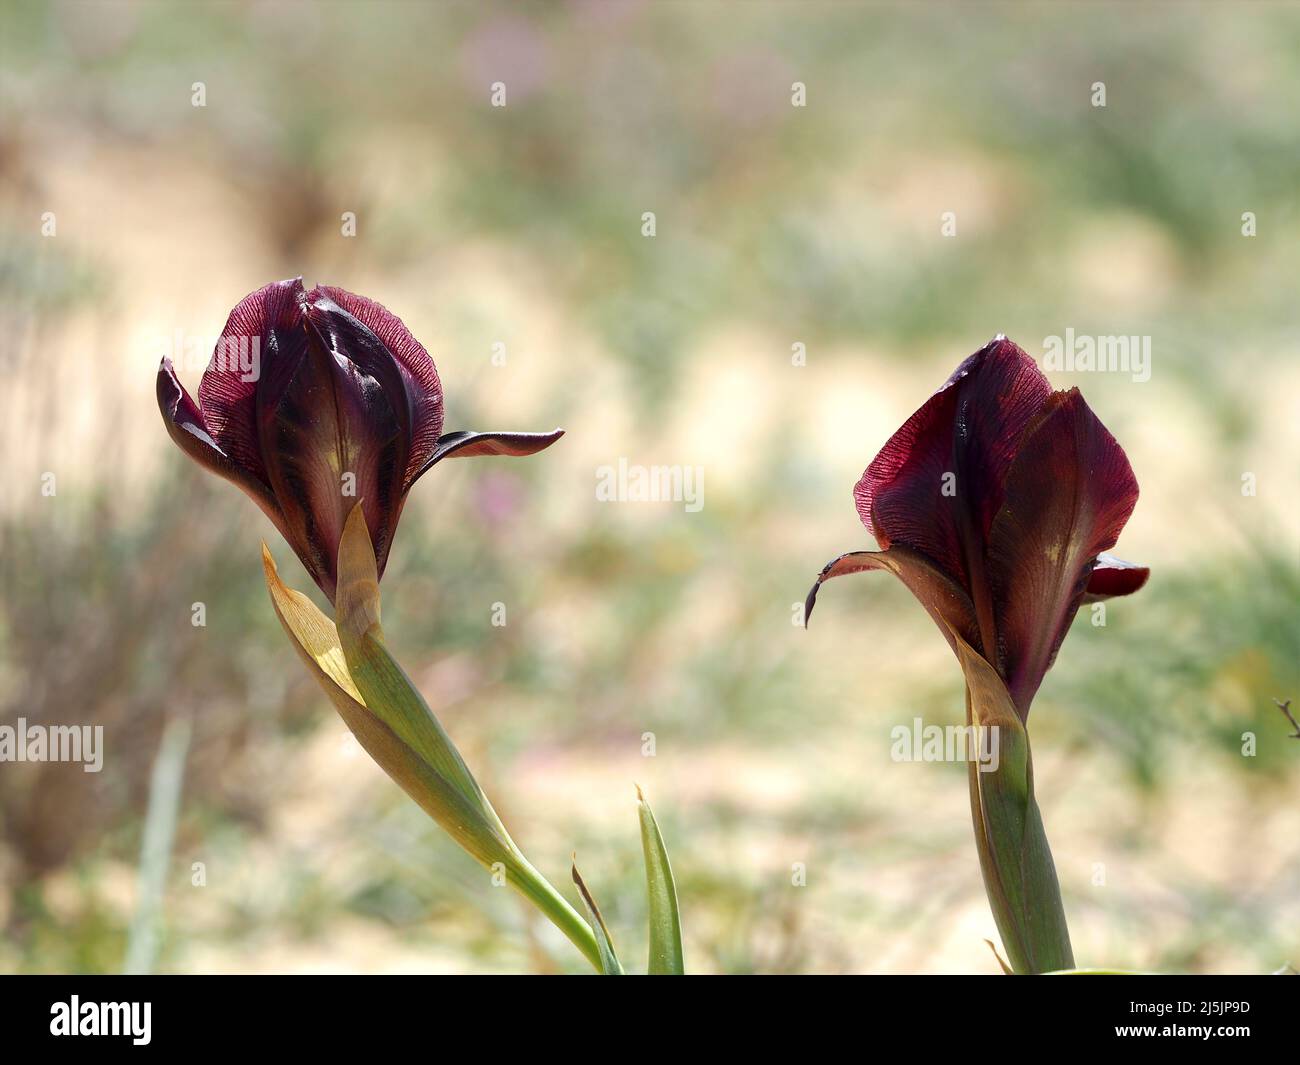 Two beautiful wild irises in the Israeli desert. Stock Photo